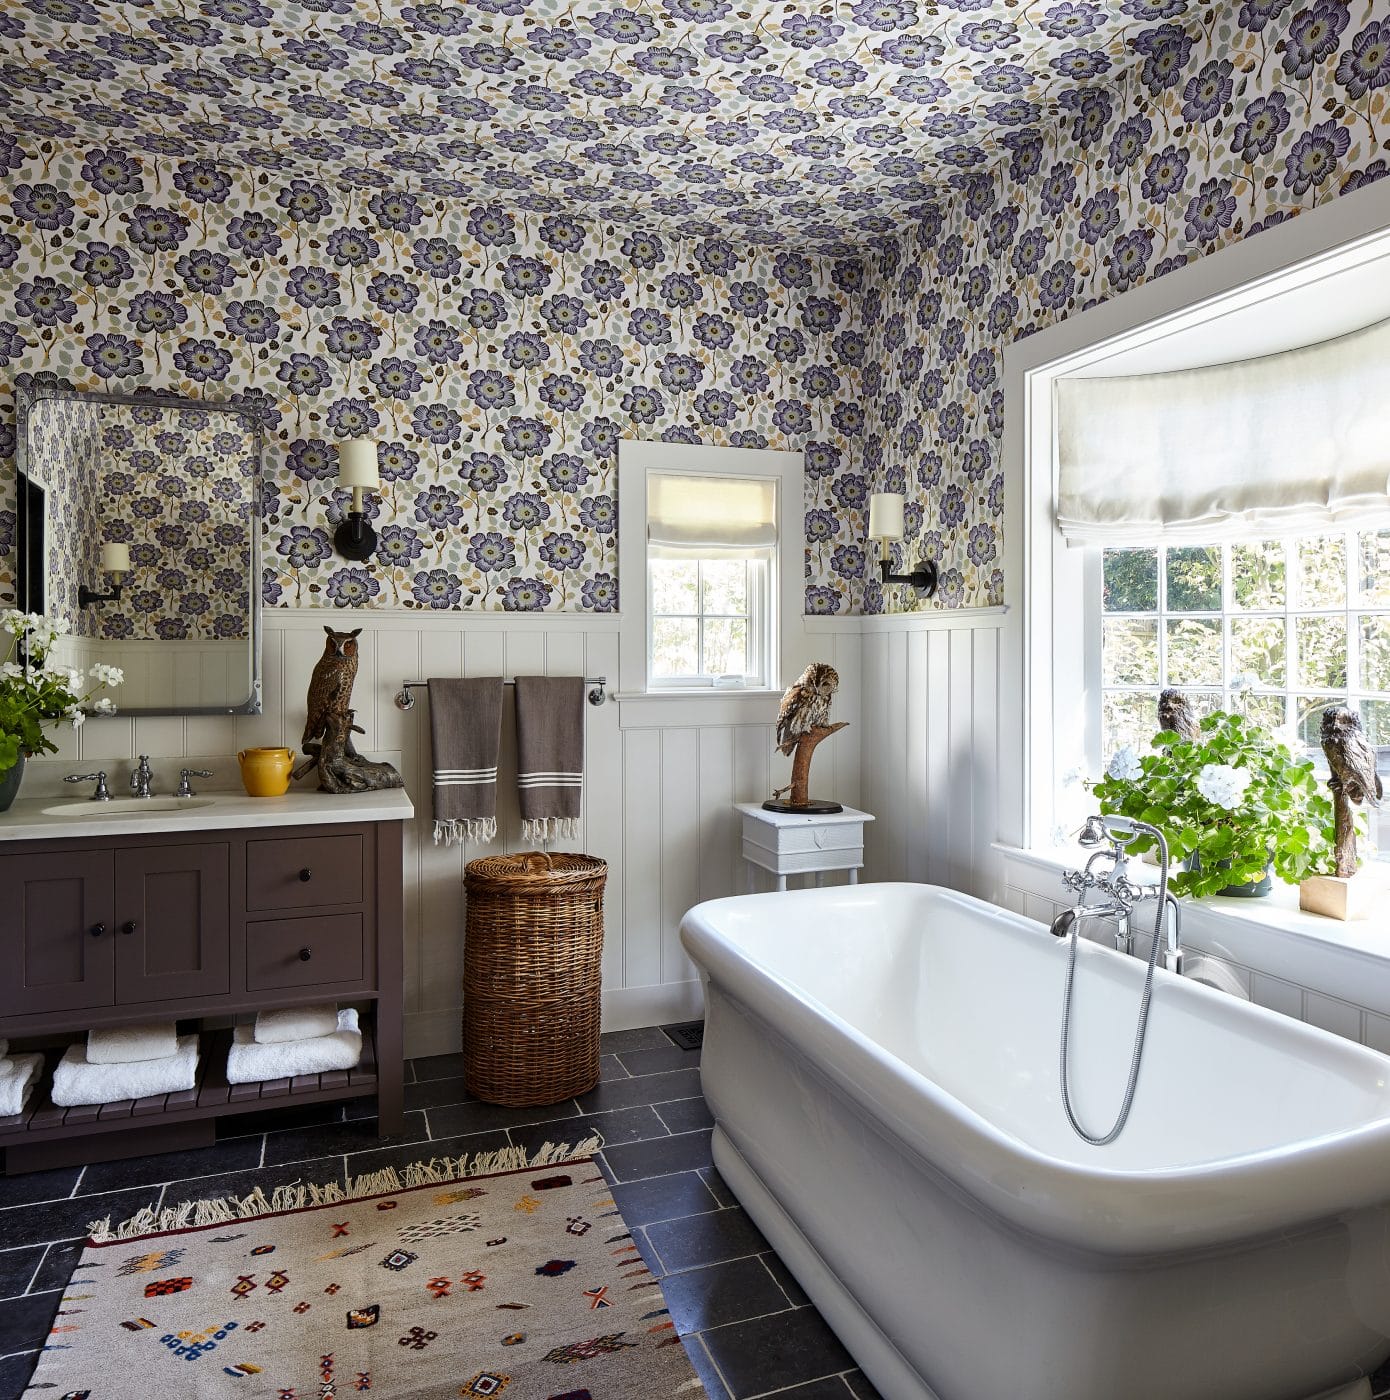 Barbara Sallick Rizzoli book The Ultimate Bath interior designer Philip Gorrivan bathroom